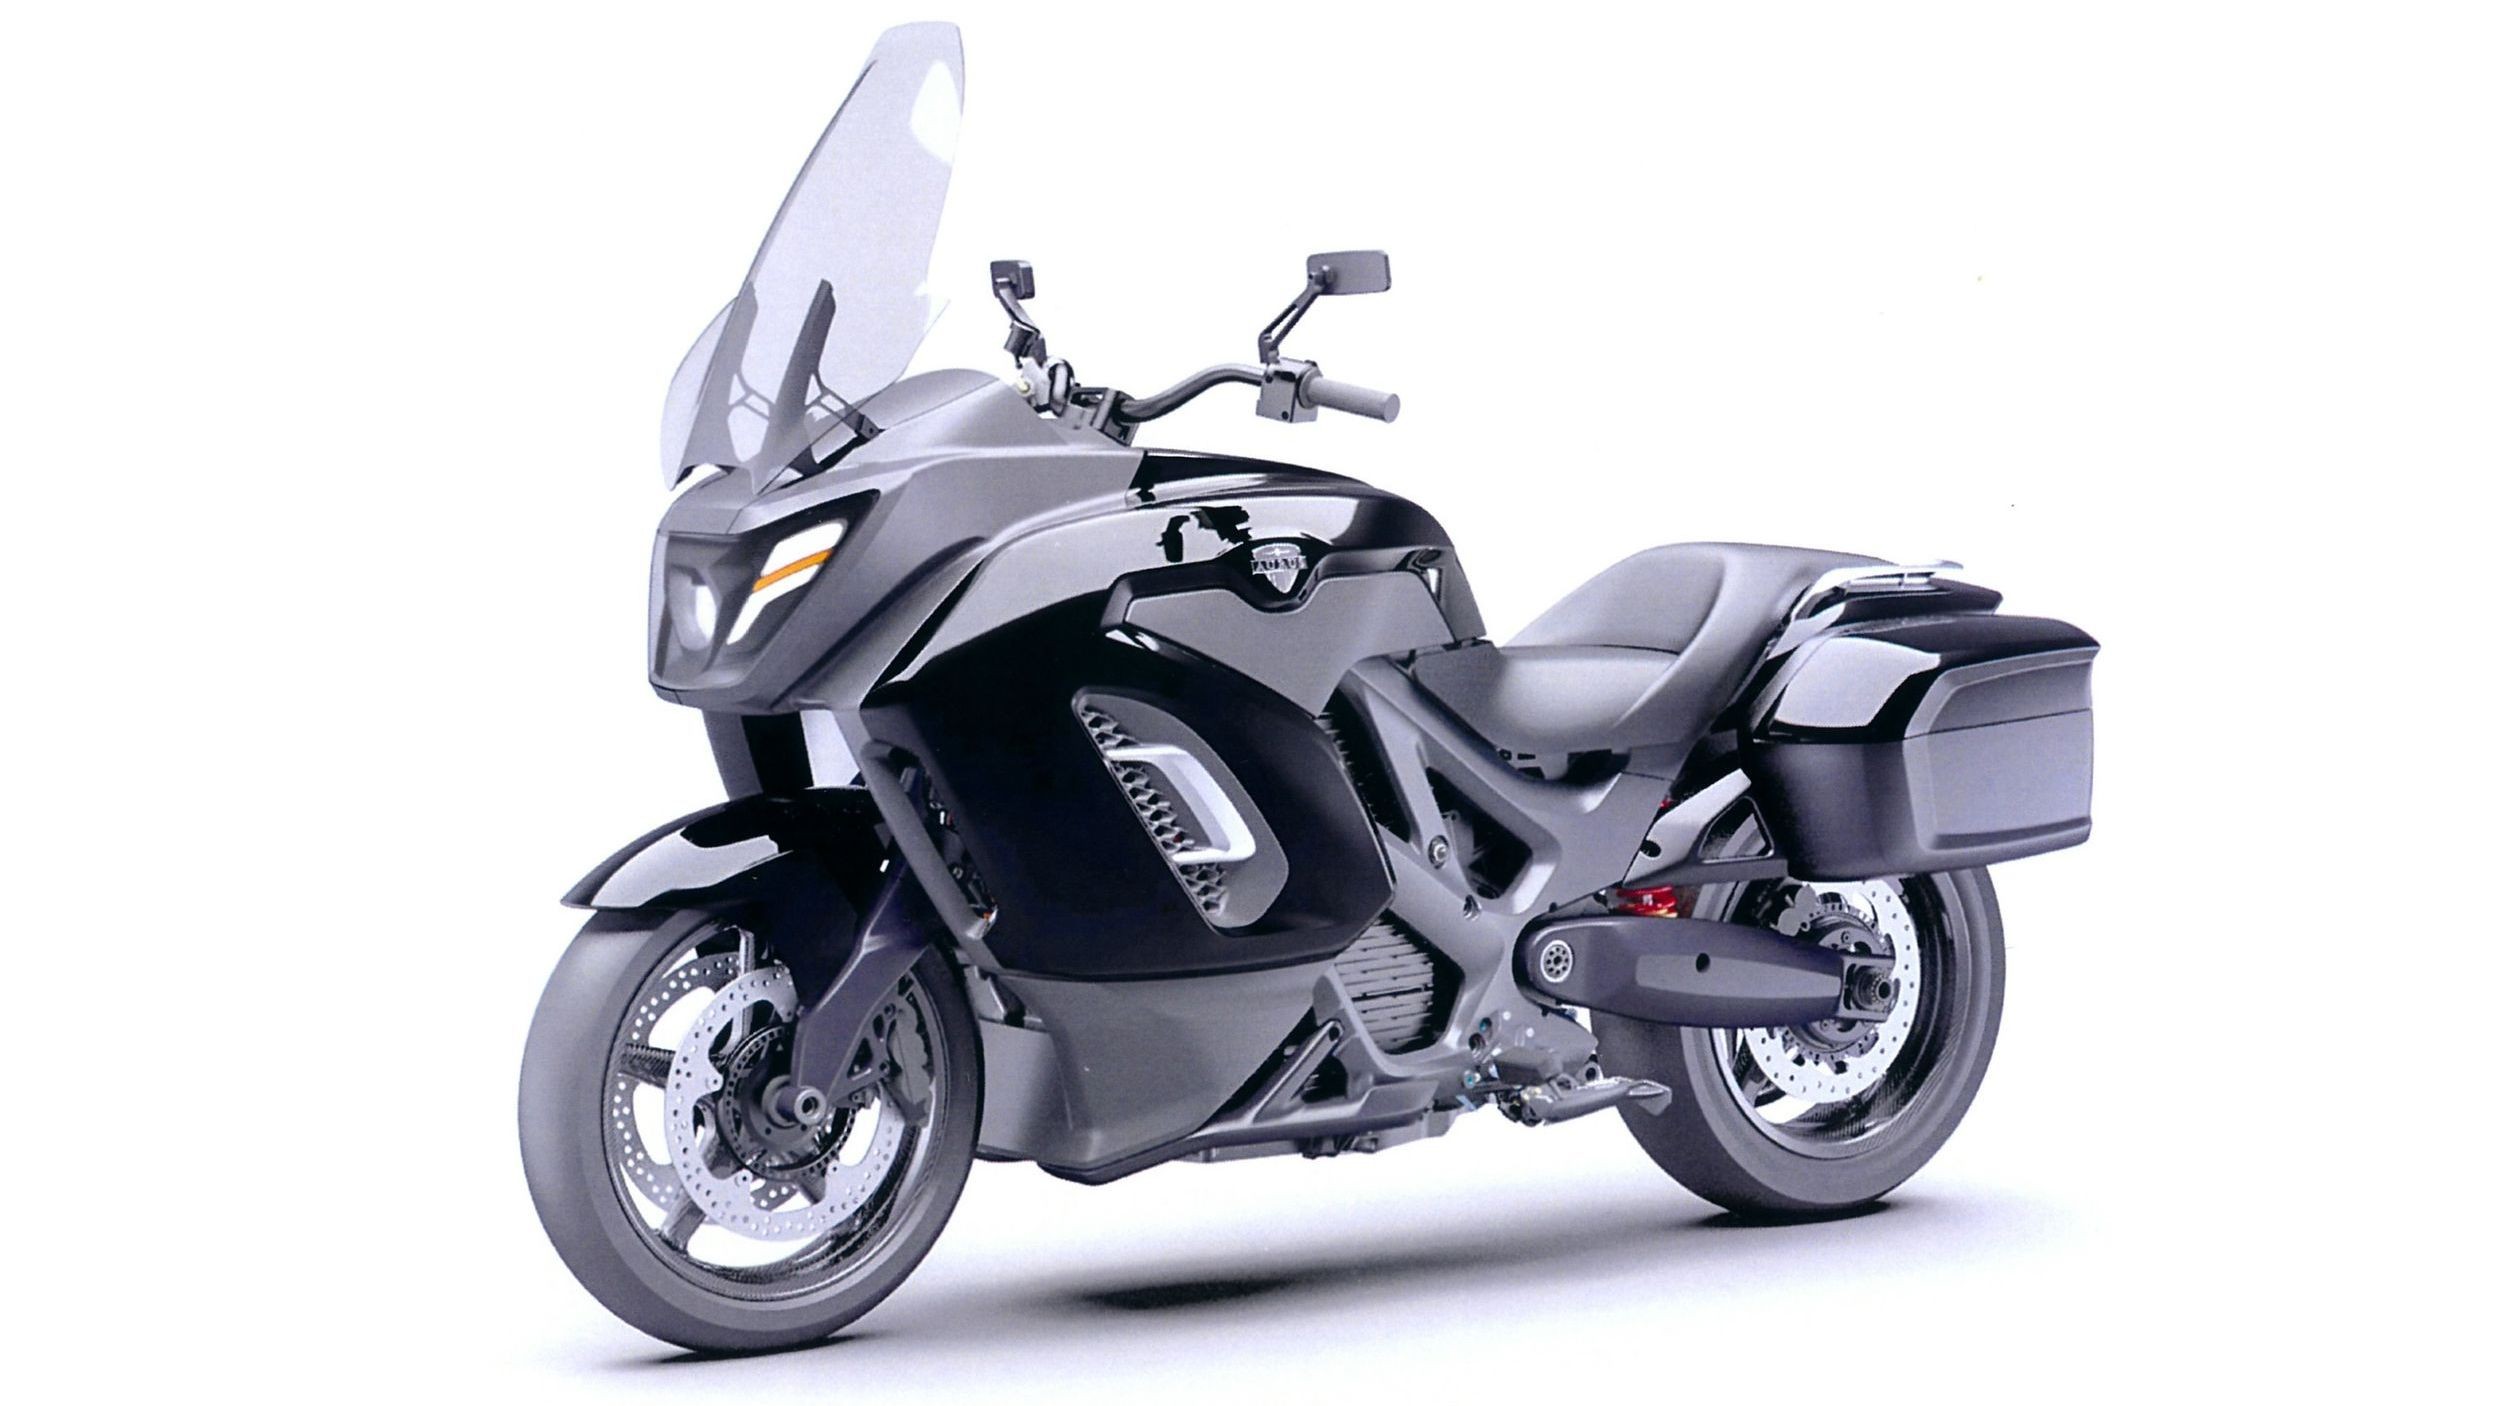 Патентные изображения мотоцикла Aurus: обычный турист вместо «ракеты Бэтмена»